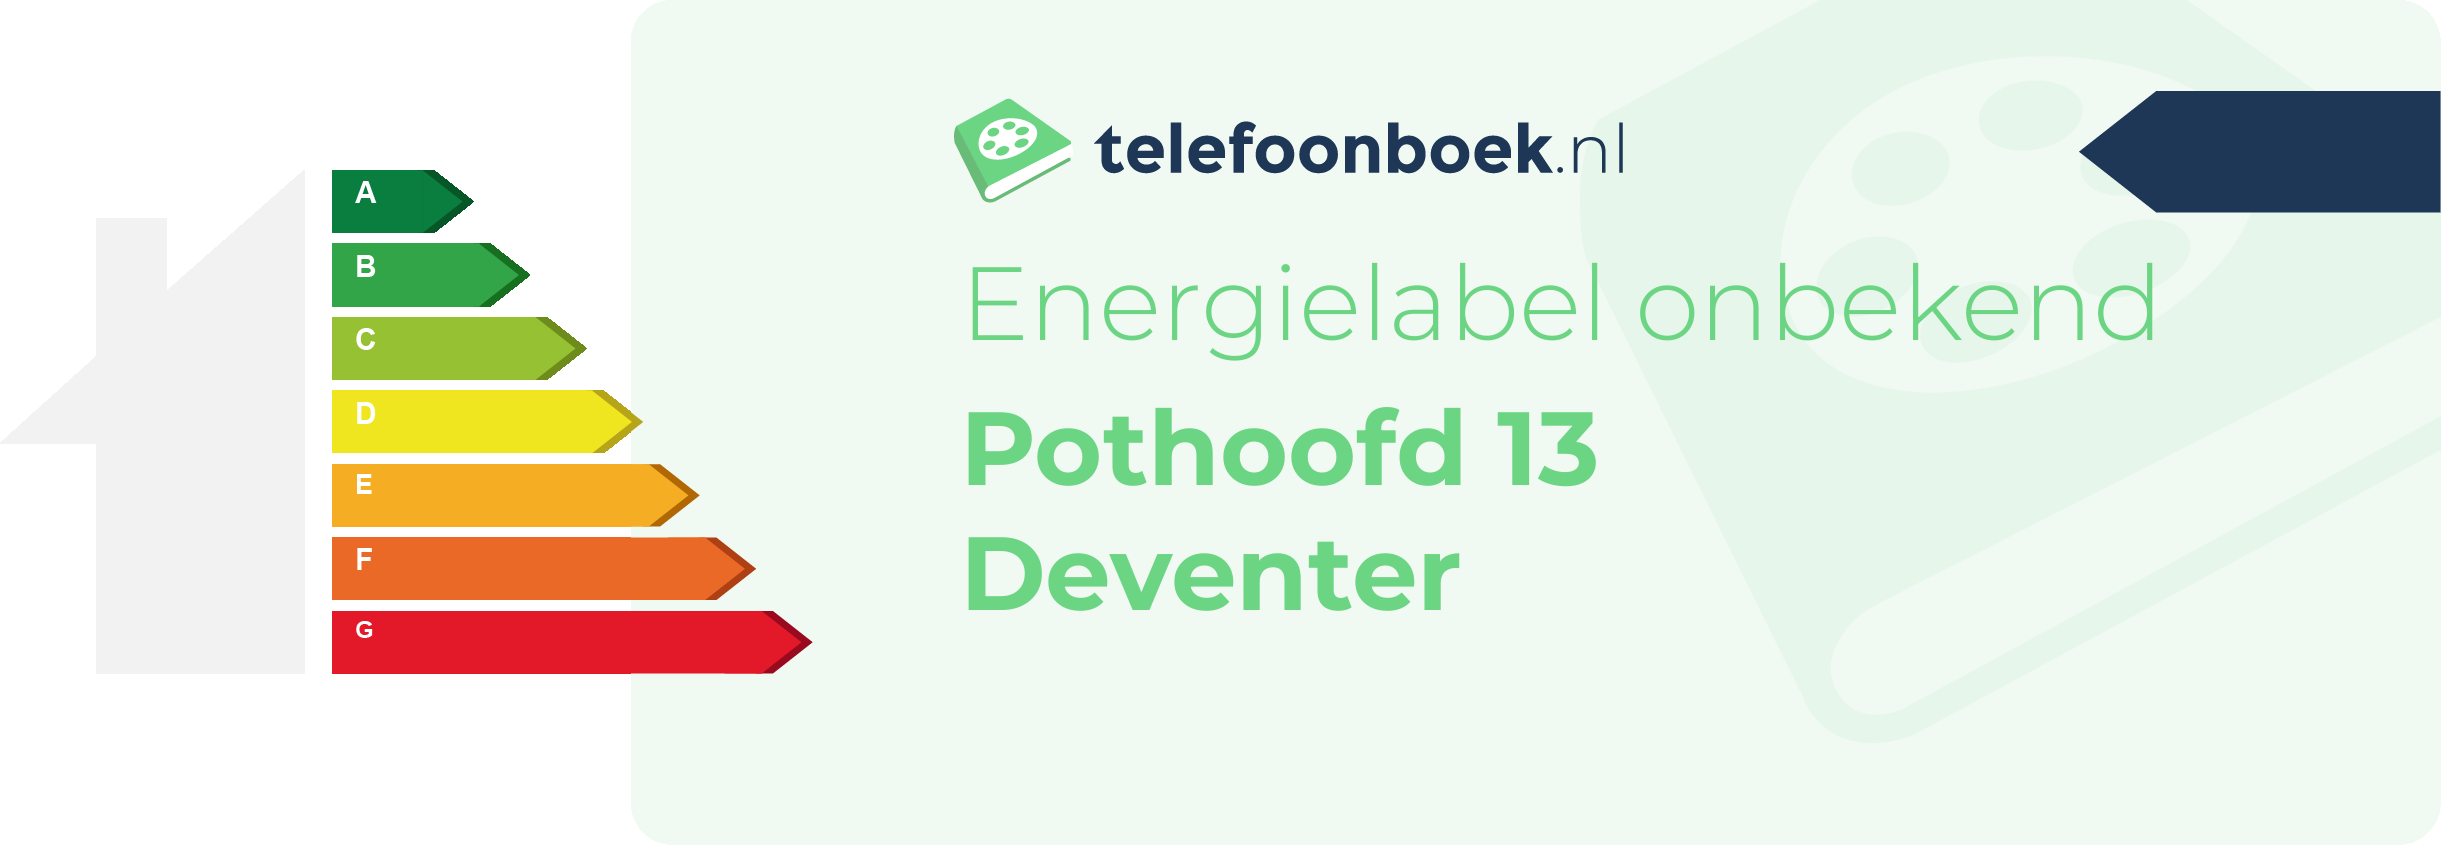 Energielabel Pothoofd 13 Deventer